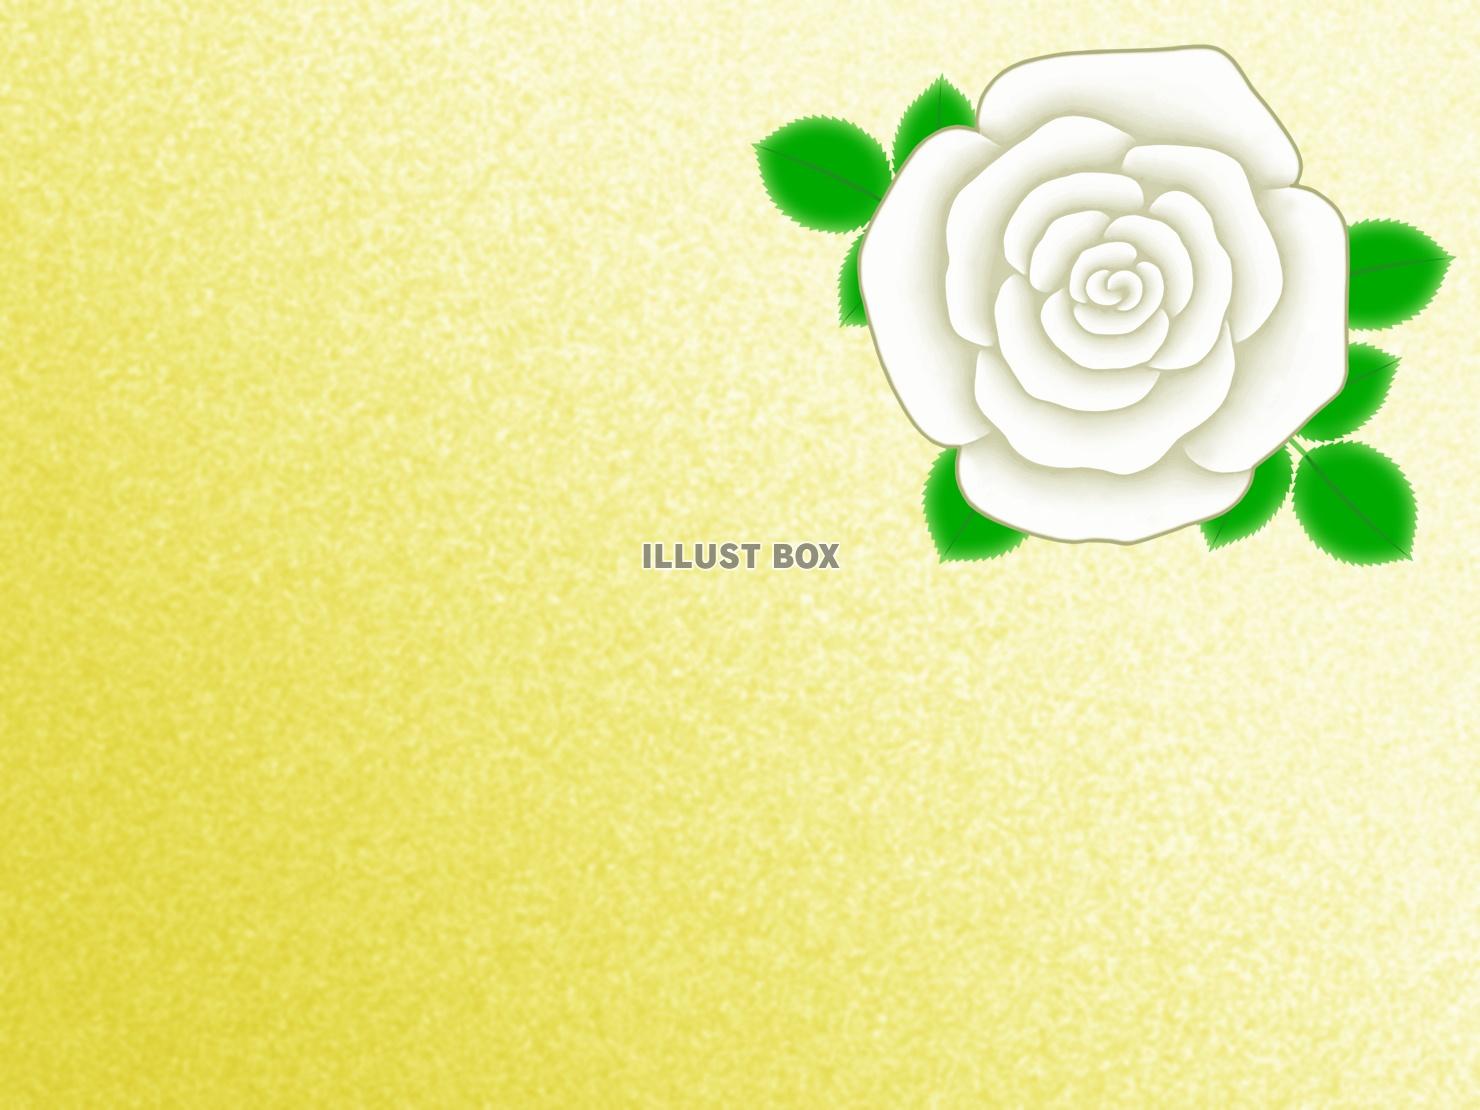 無料イラスト 薔薇の花の壁紙シンプル花柄背景素材イラスト